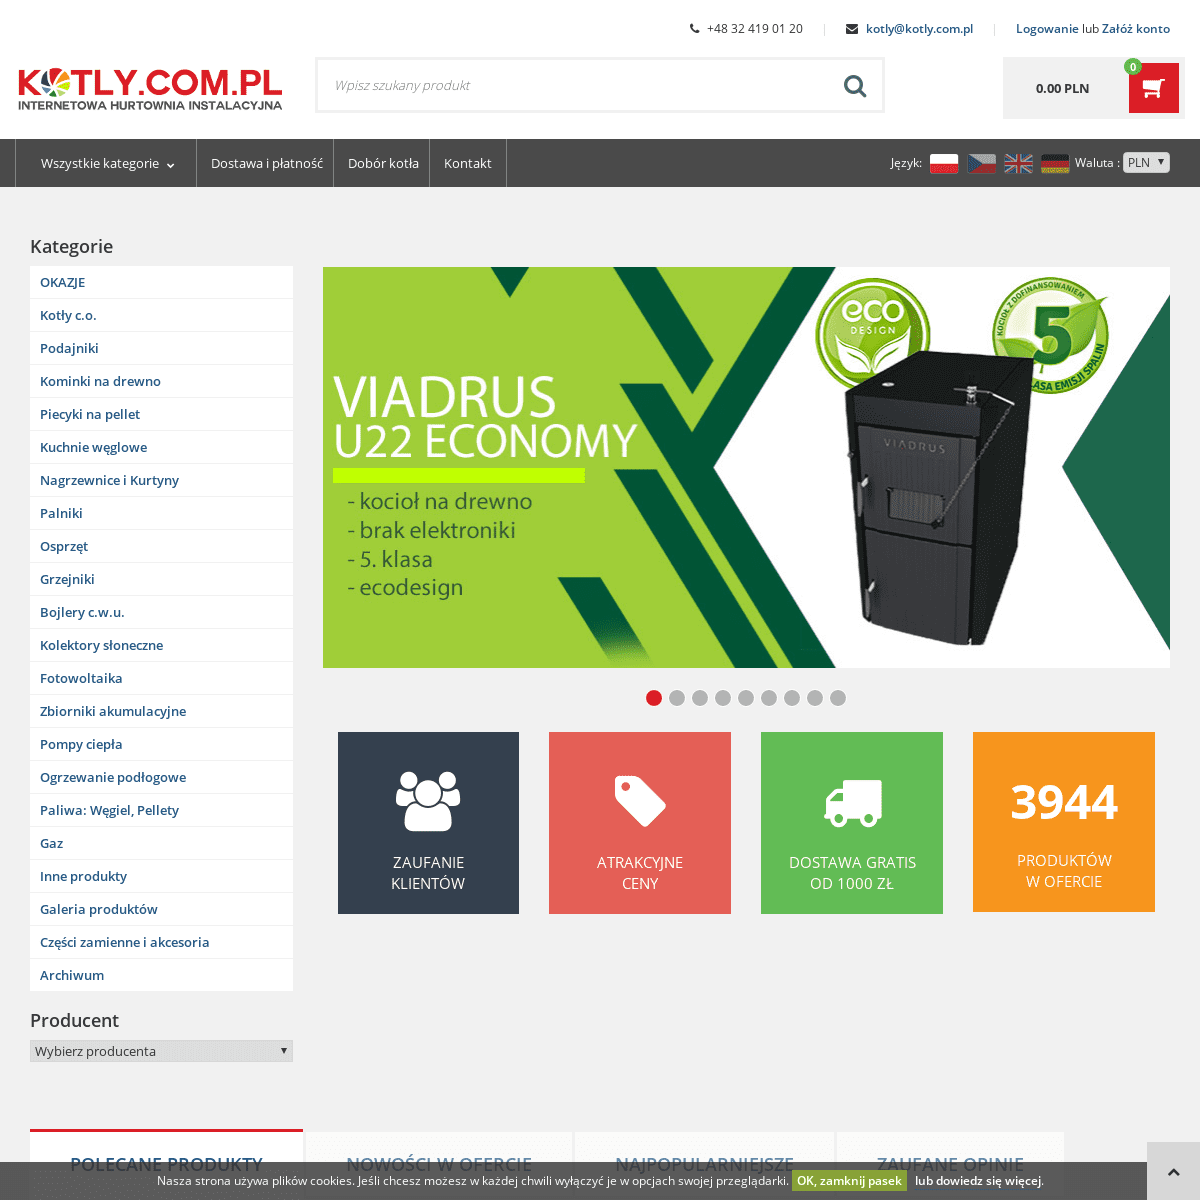 A complete backup of kotly.com.pl